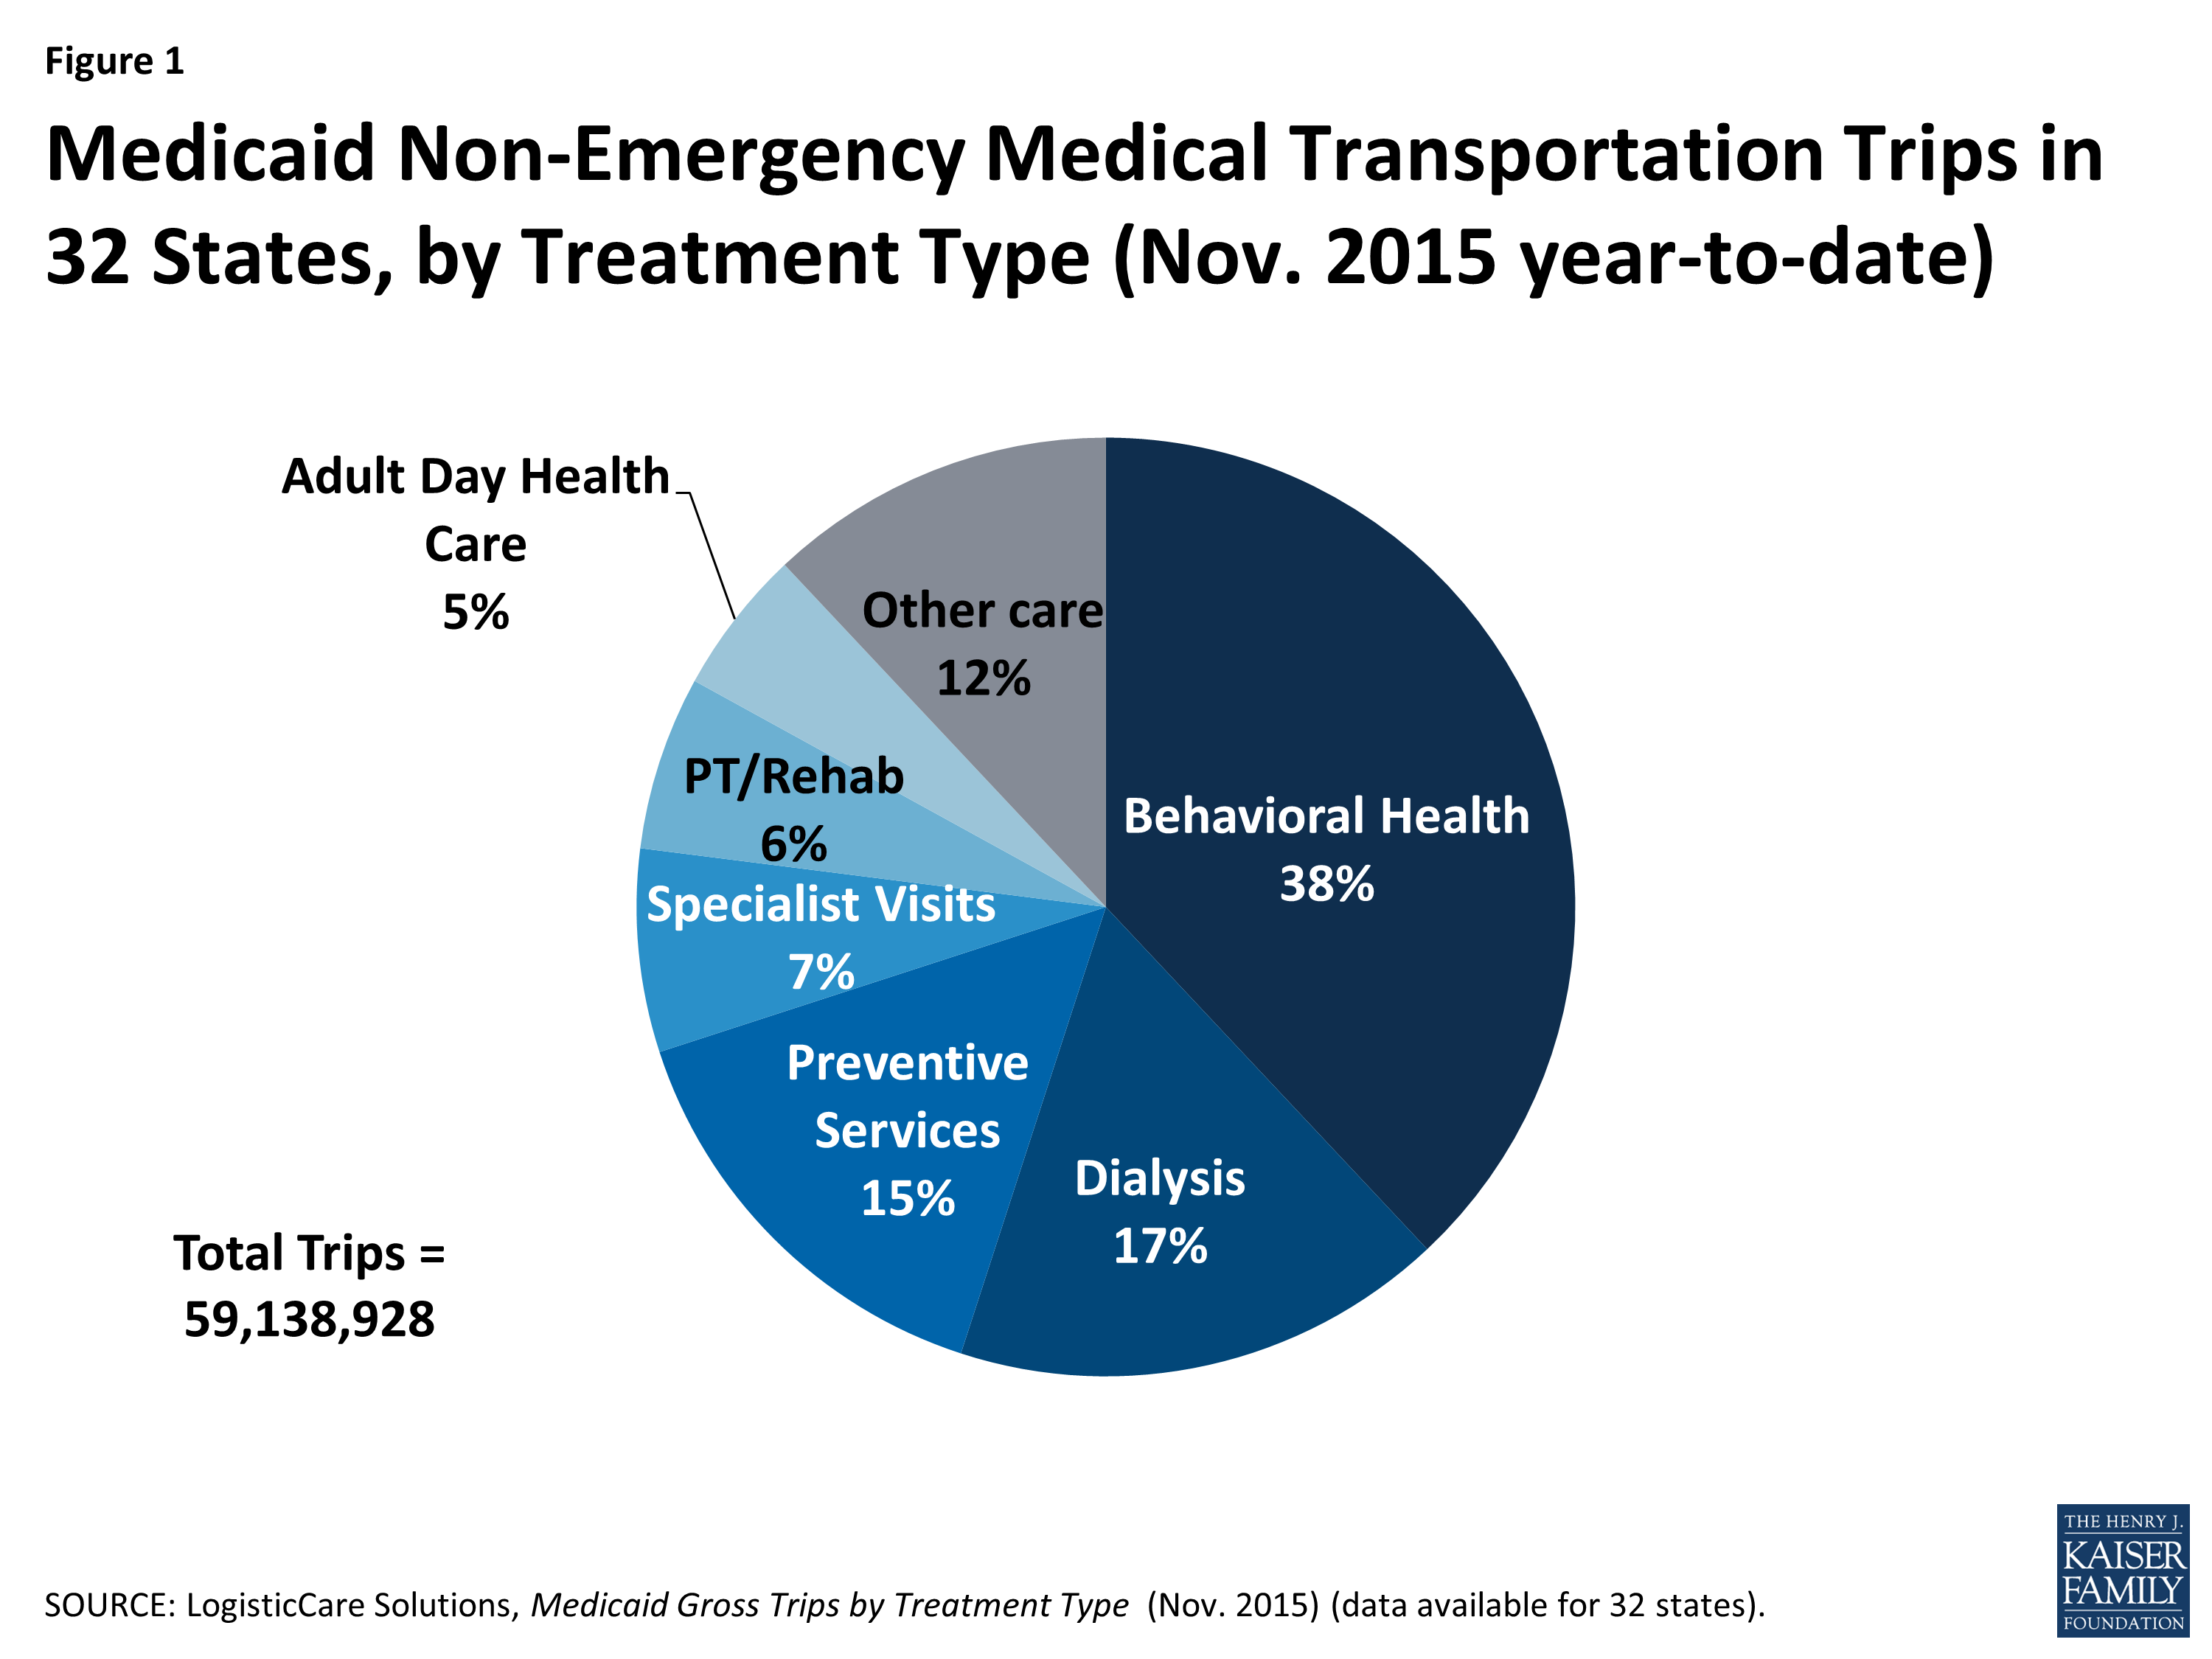  Abbildung 1: Medicaid Nicht-Notfall medizinische Transportfahrten in 32 Staaten, nach Behandlungsart (Nov. 2015 year-to-date)